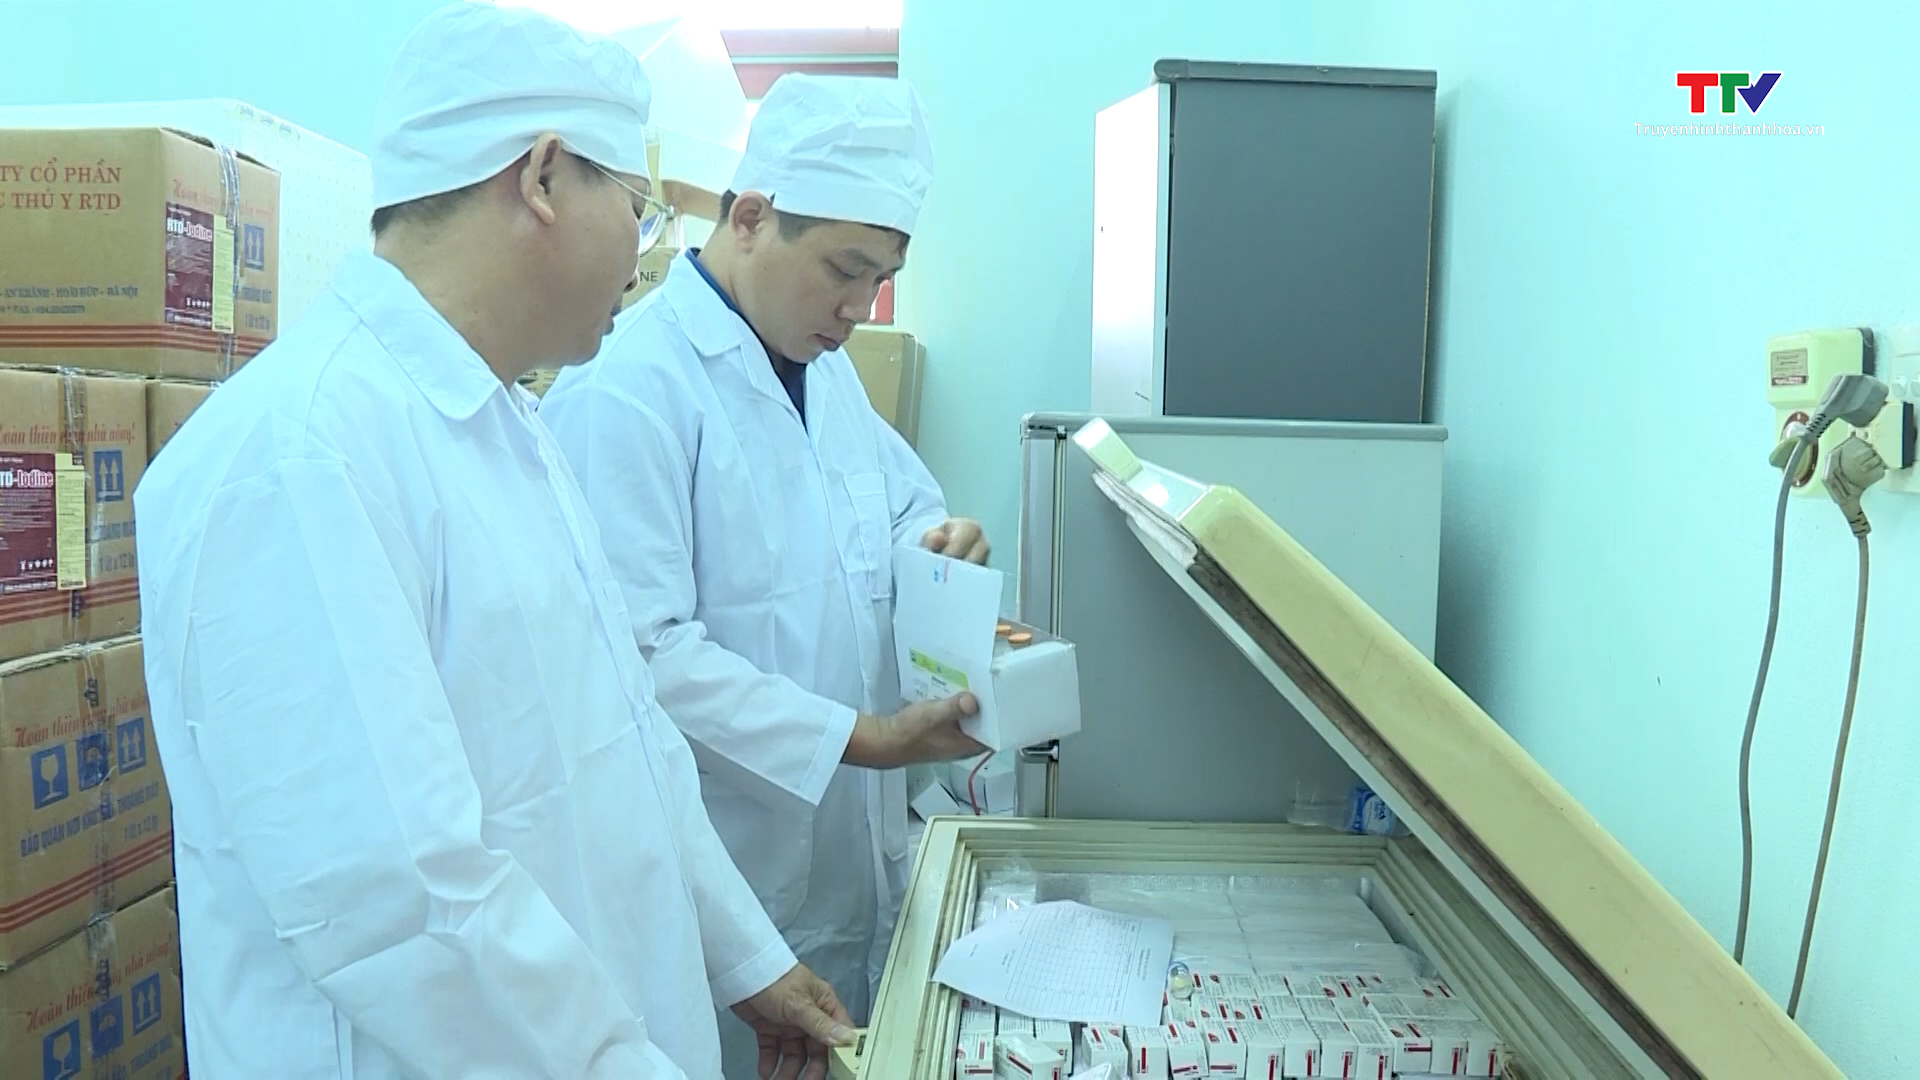 Việt Nam sắp xuất khẩu 2 triệu liều vaccine dịch tả lợn châu Phi - Ảnh 2.